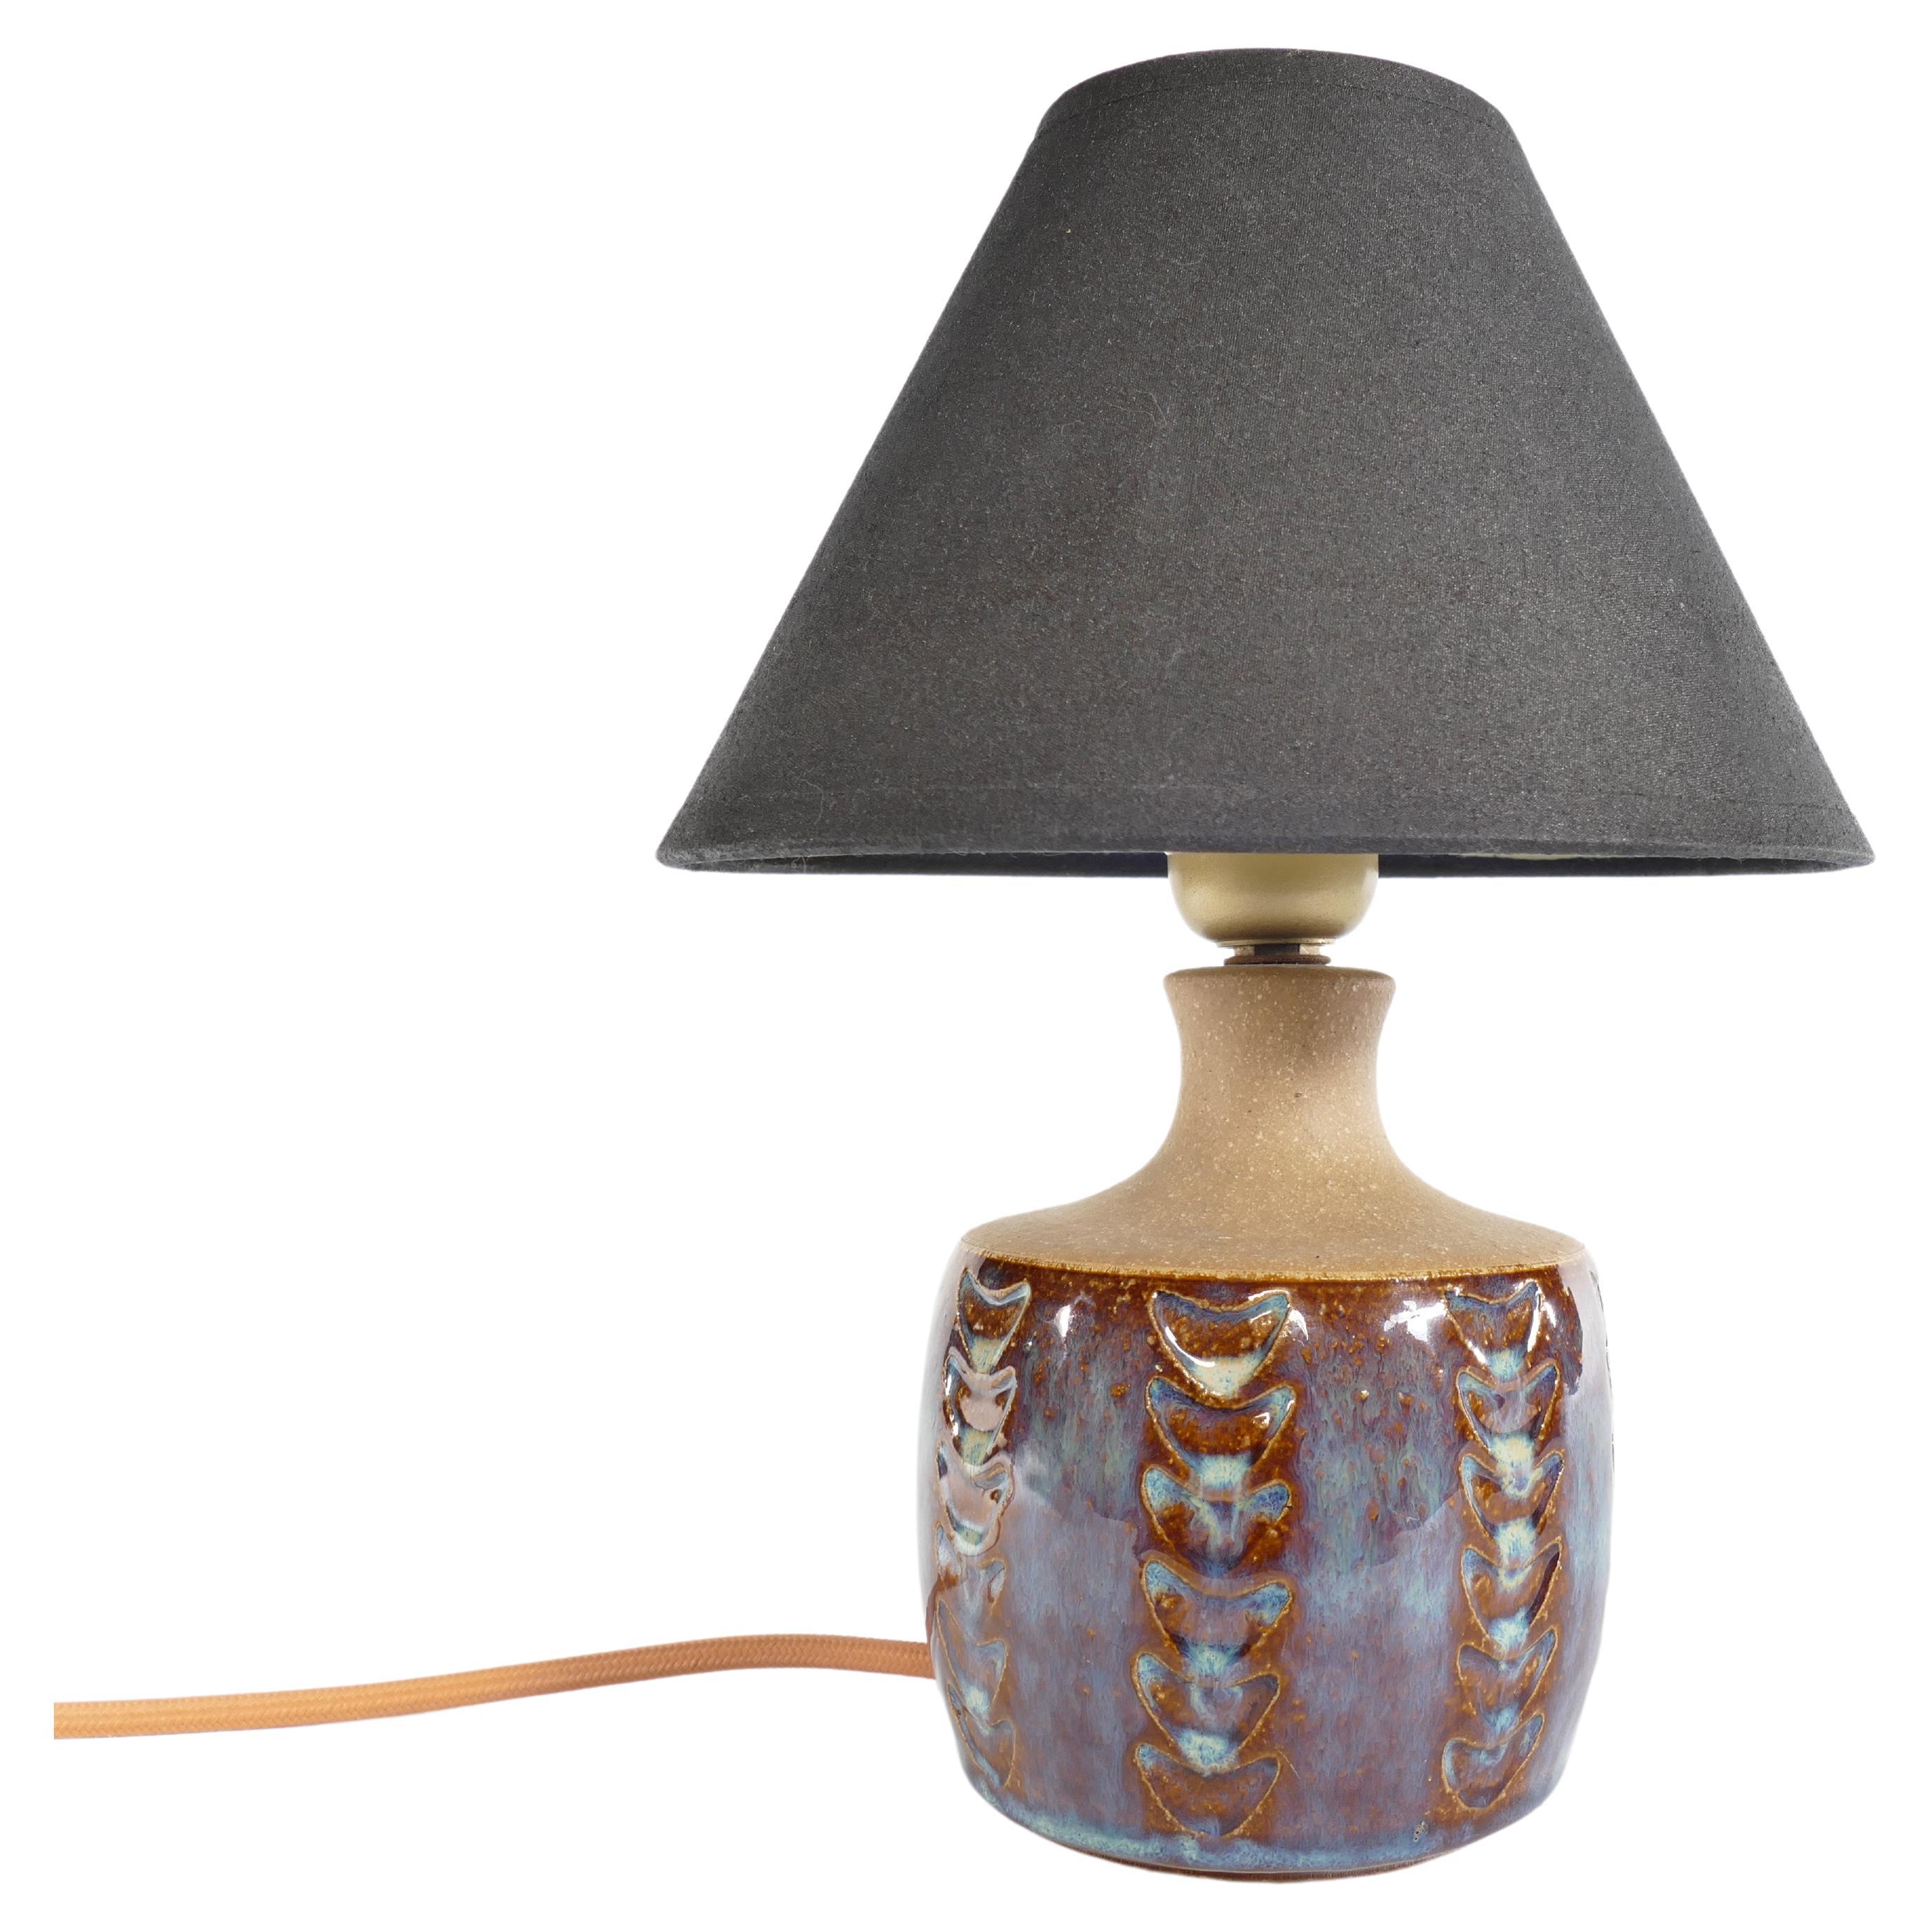 Fabriquée à la main au milieu du XXe siècle, cette exquise lampe de table en grès porte la marque distinctive de Søholm Stentøj. Produite par la célèbre entreprise danoise Soholm Stentoj sur l'île pittoresque de Bornholm, cette lampe capture